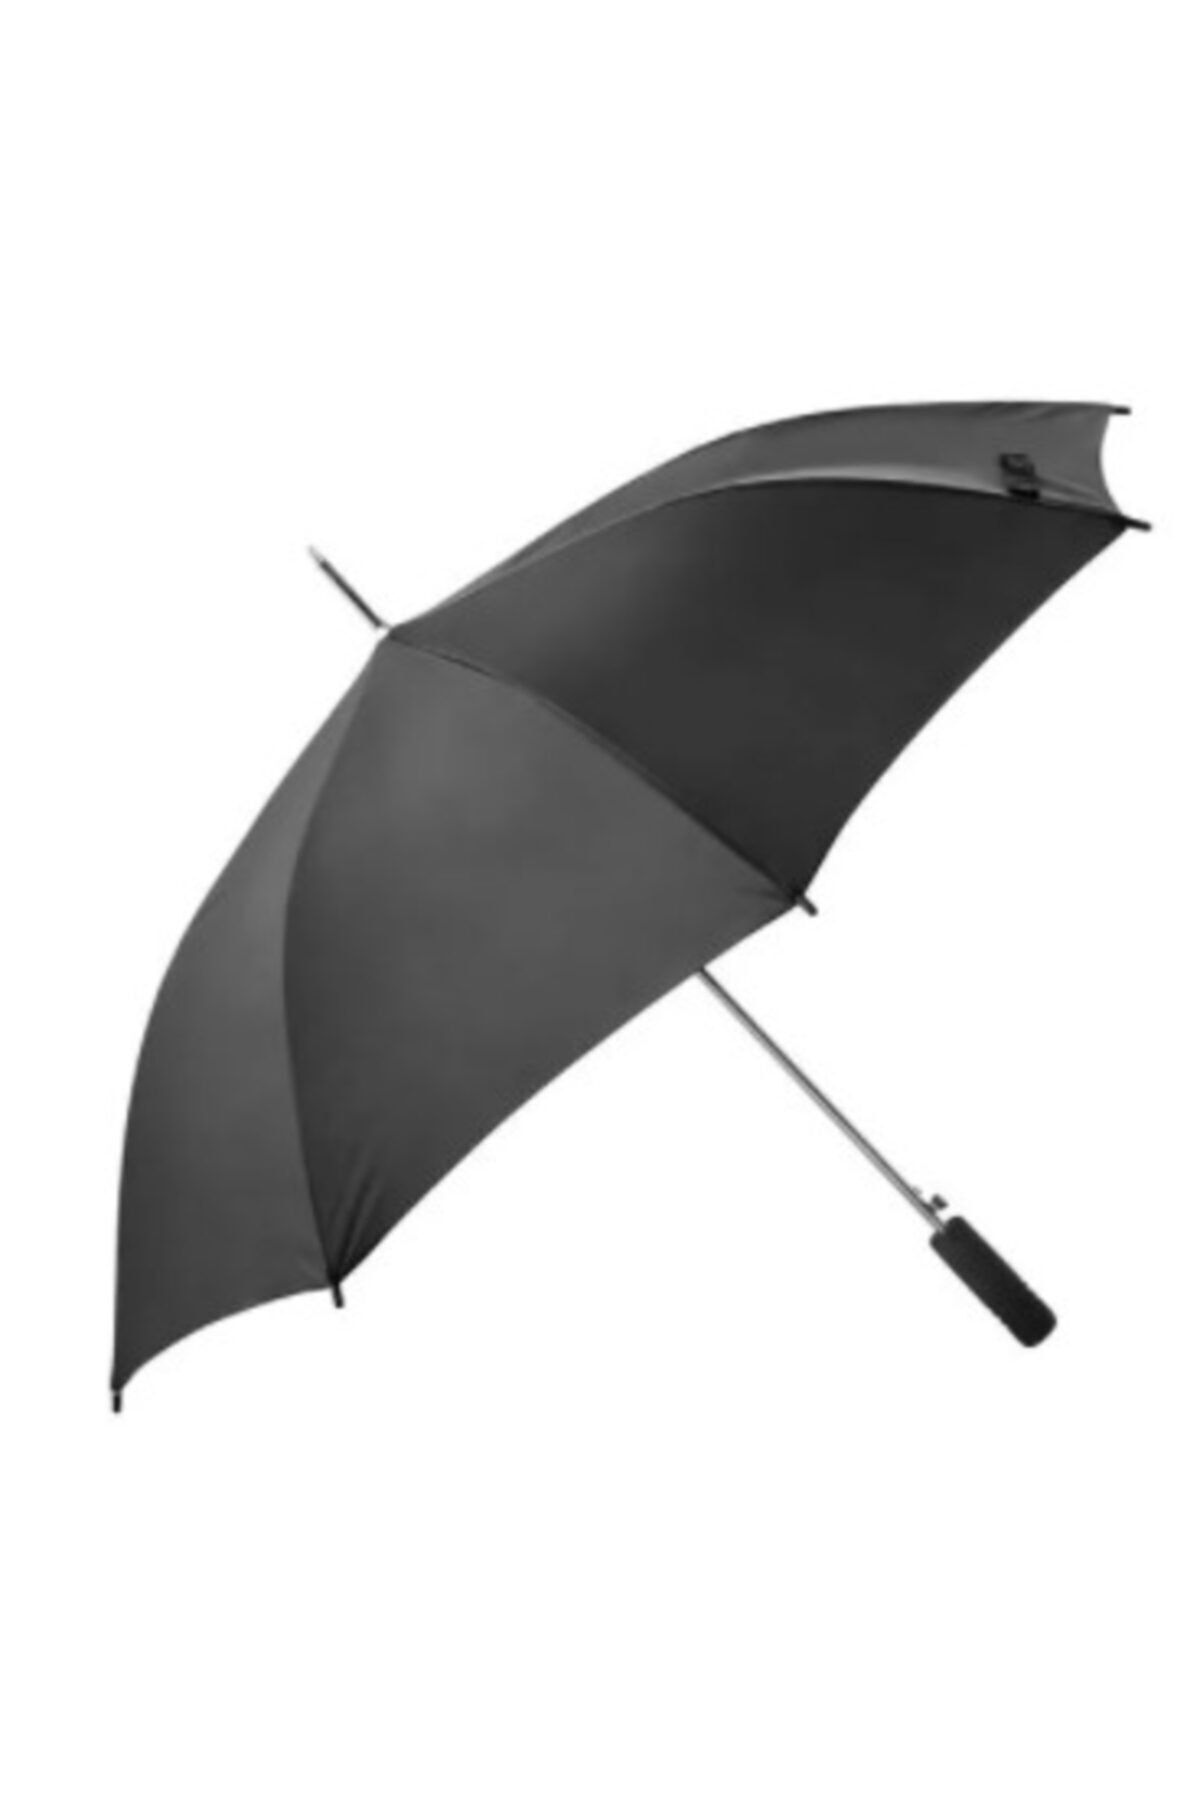 IKEA Knalla Katlanabilir Şemsiye Siyah